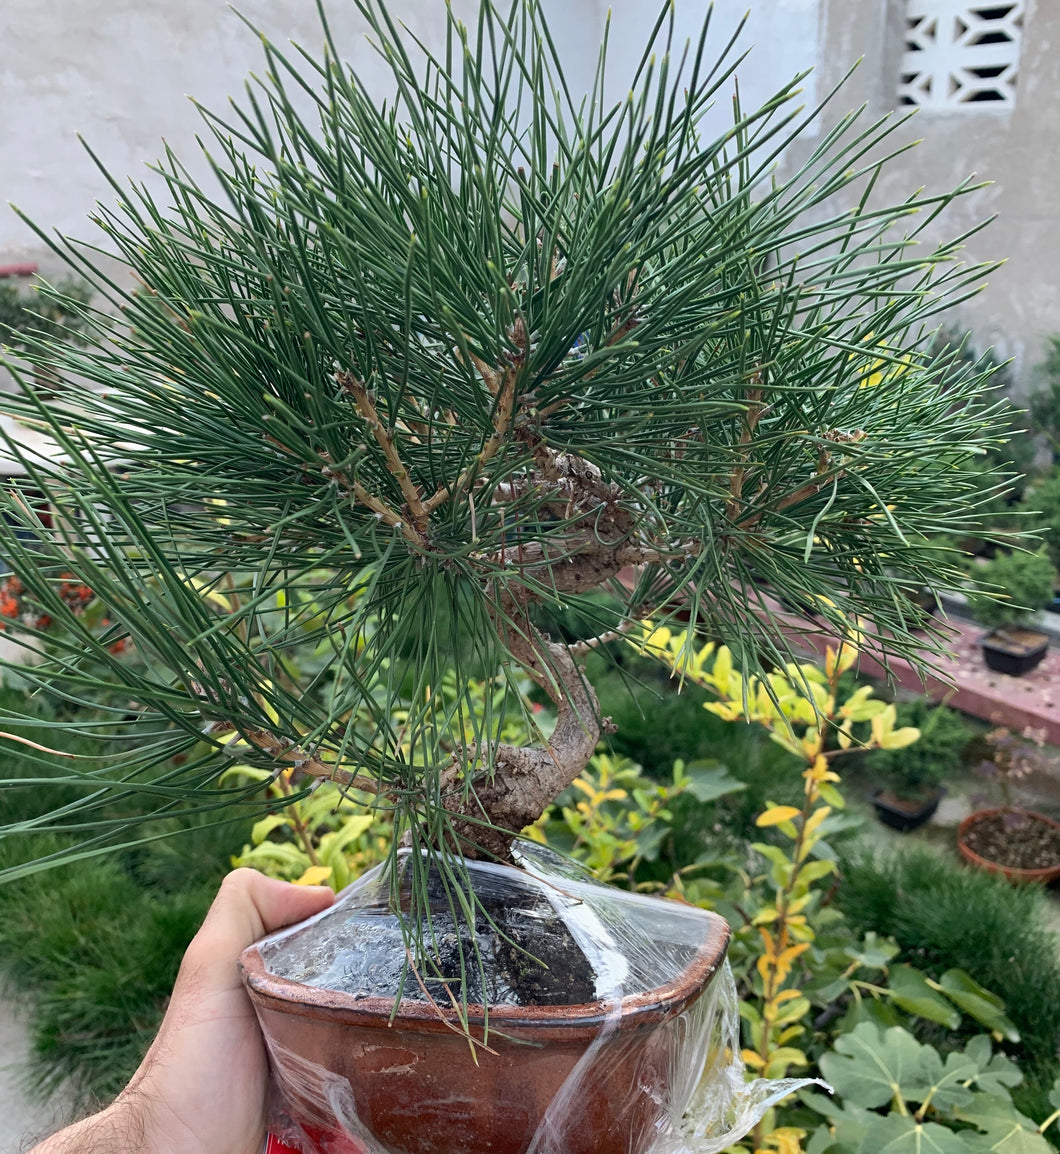 Pinus thumbergii (pino negro japones)